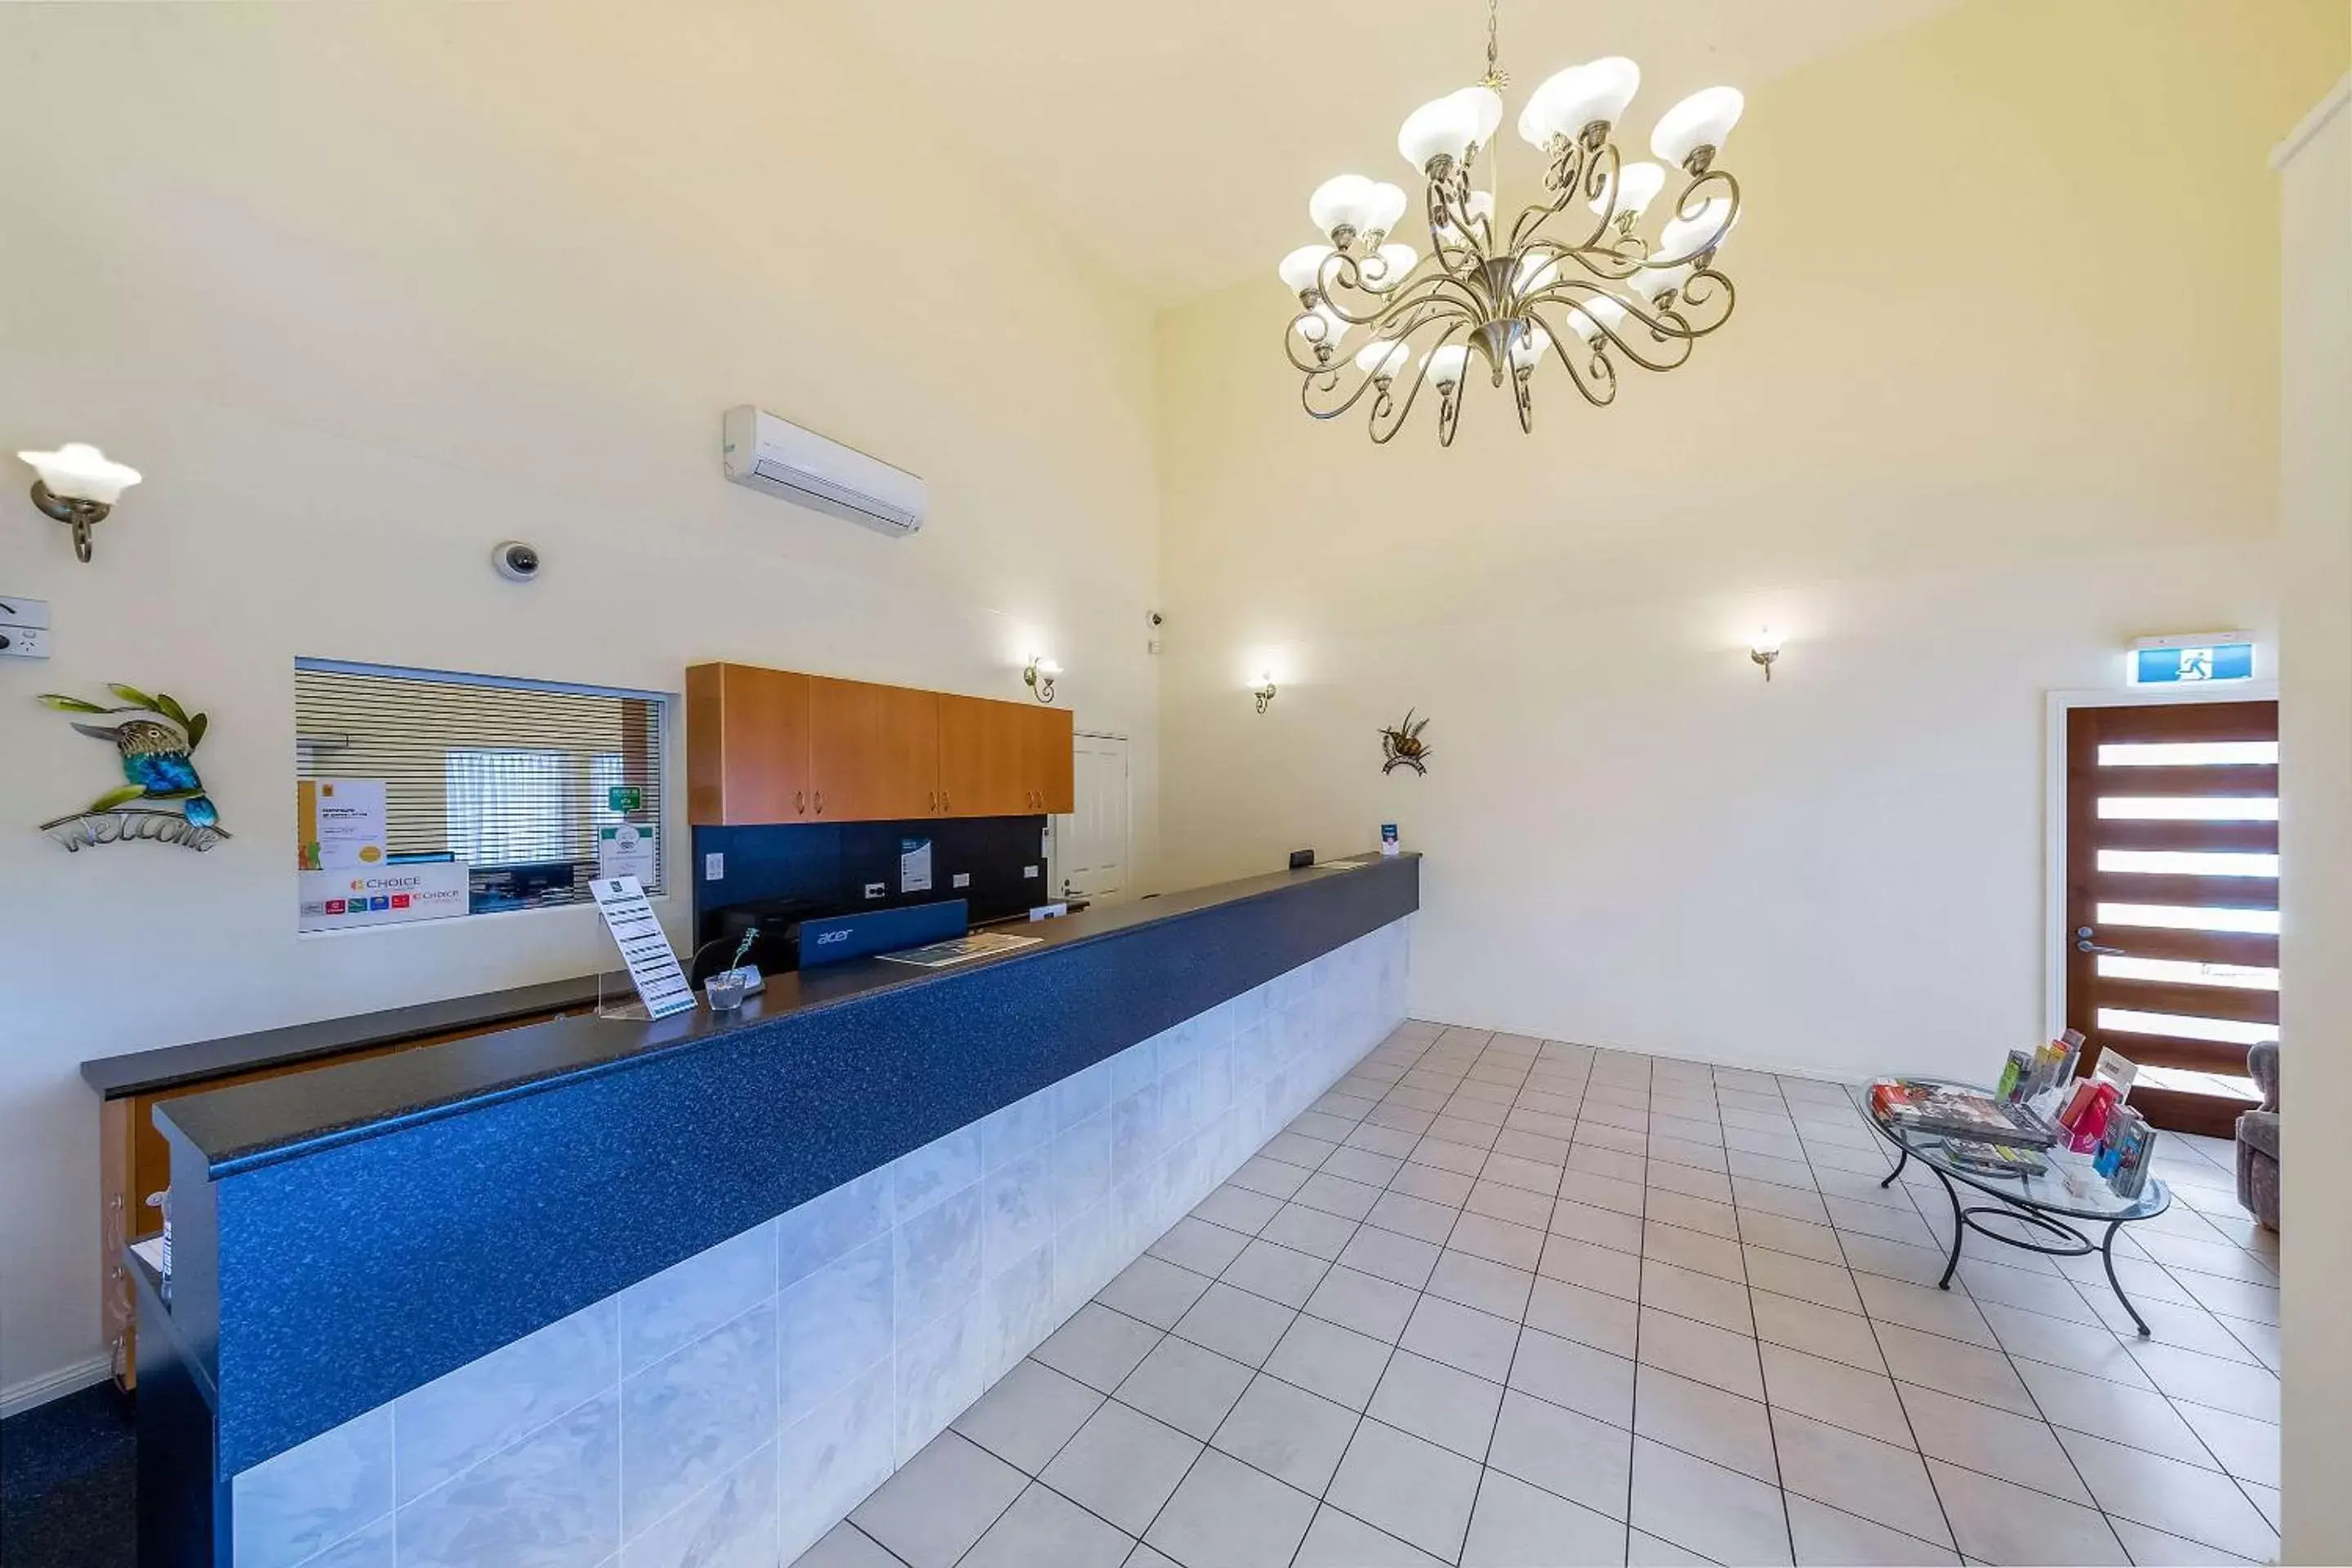 Lobby or reception, Lobby/Reception in Quality Inn Penrith Sydney